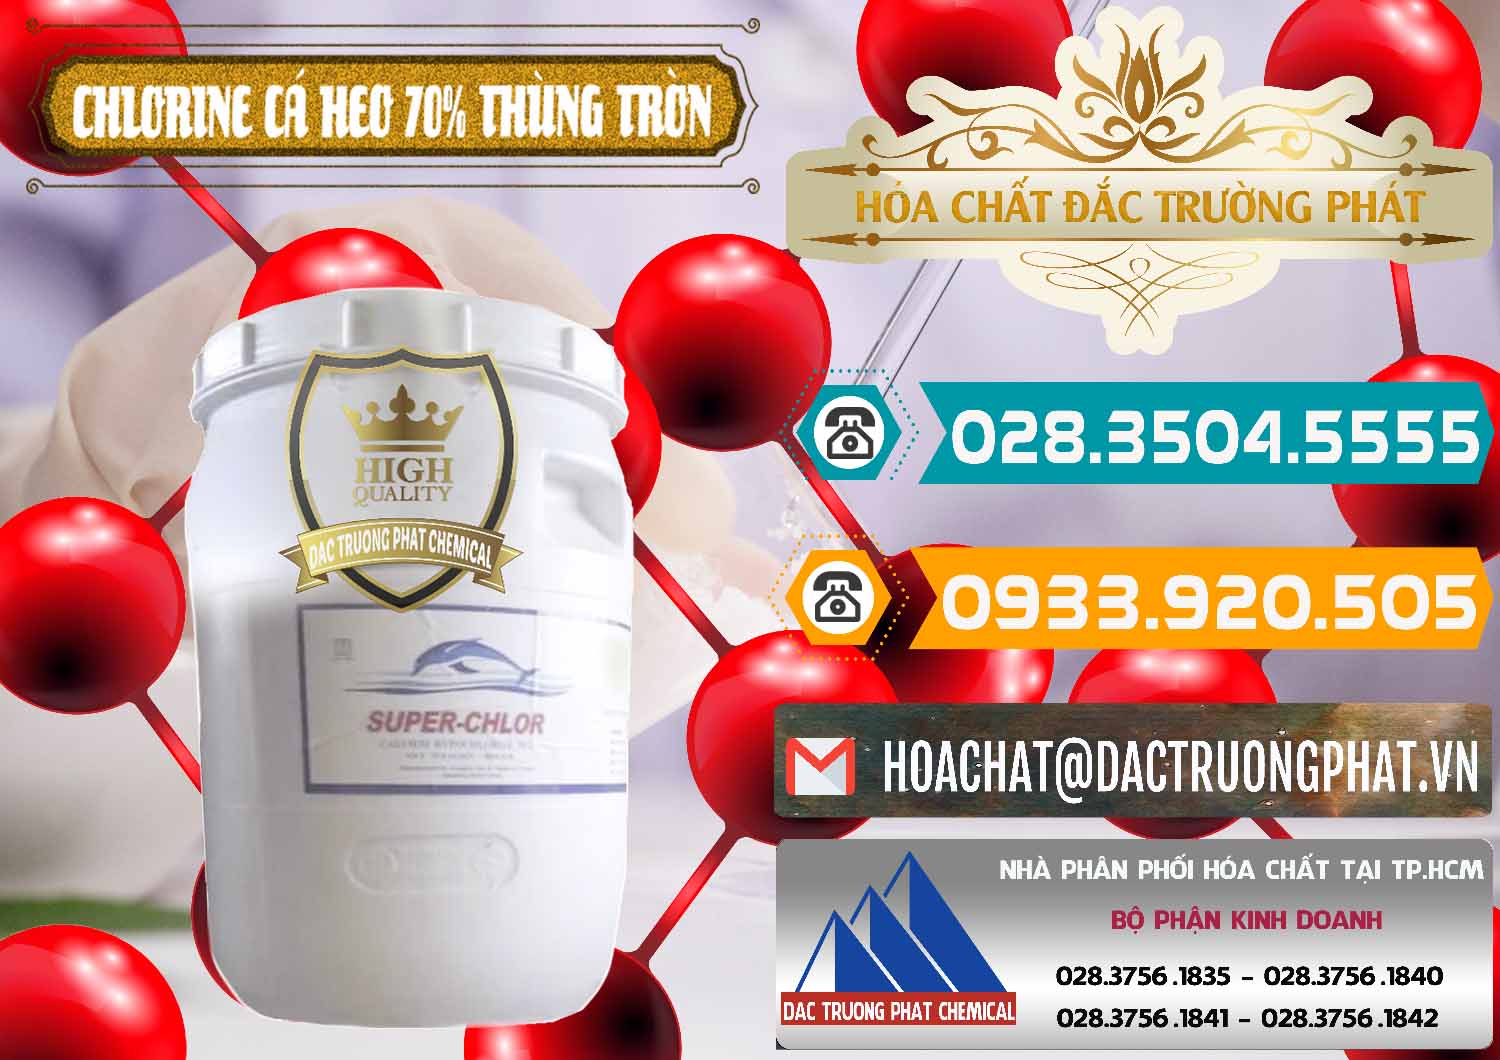 Cty chuyên cung ứng & bán Clorin - Chlorine Cá Heo 70% Super Chlor Thùng Tròn Nắp Trắng Trung Quốc China - 0239 - Công ty chuyên kinh doanh & phân phối hóa chất tại TP.HCM - congtyhoachat.vn